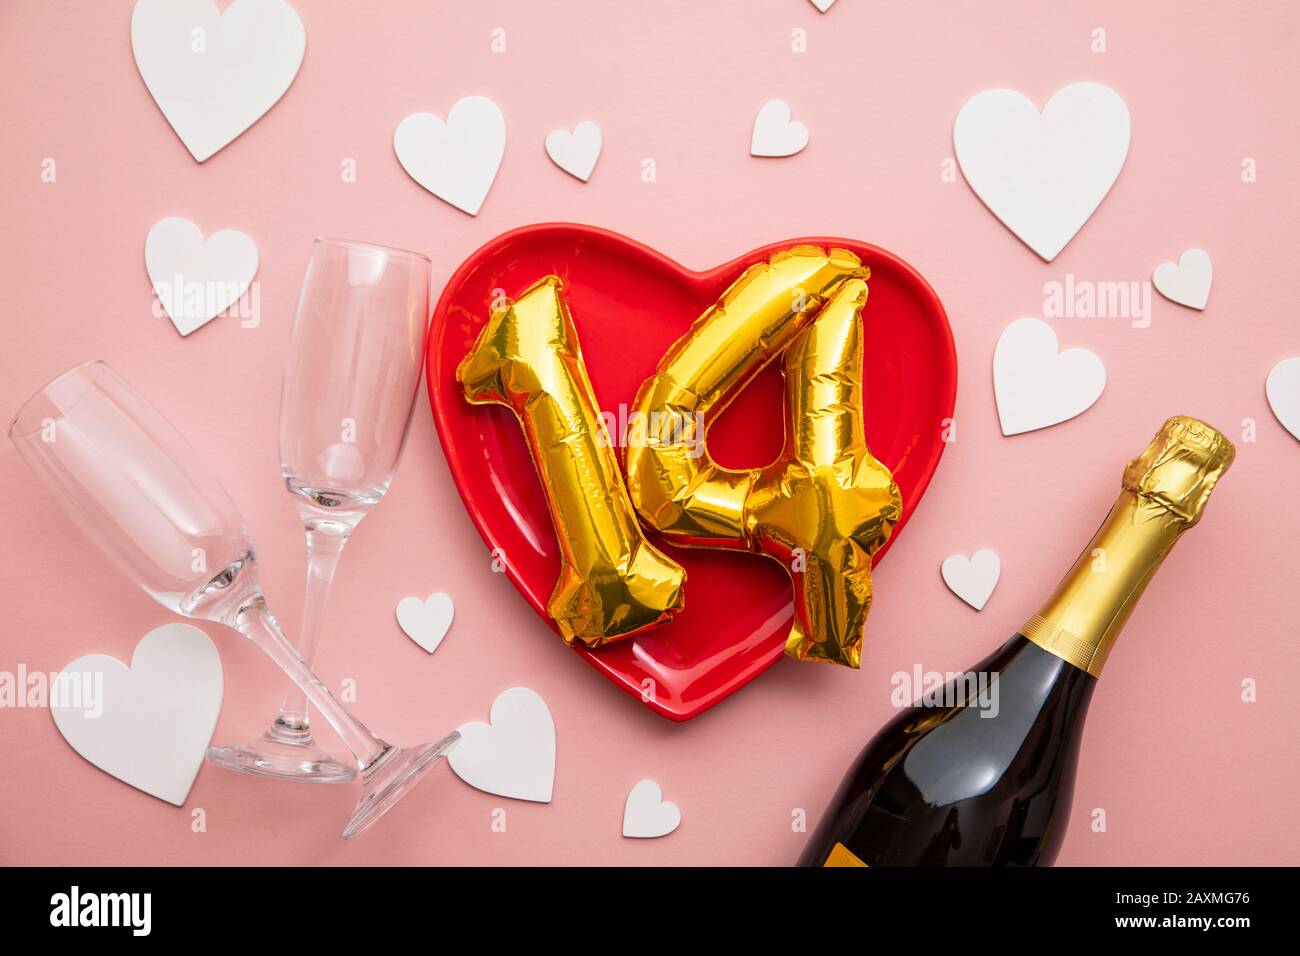 14 de febrero romántico día de San Valentín fondo Foto de stock